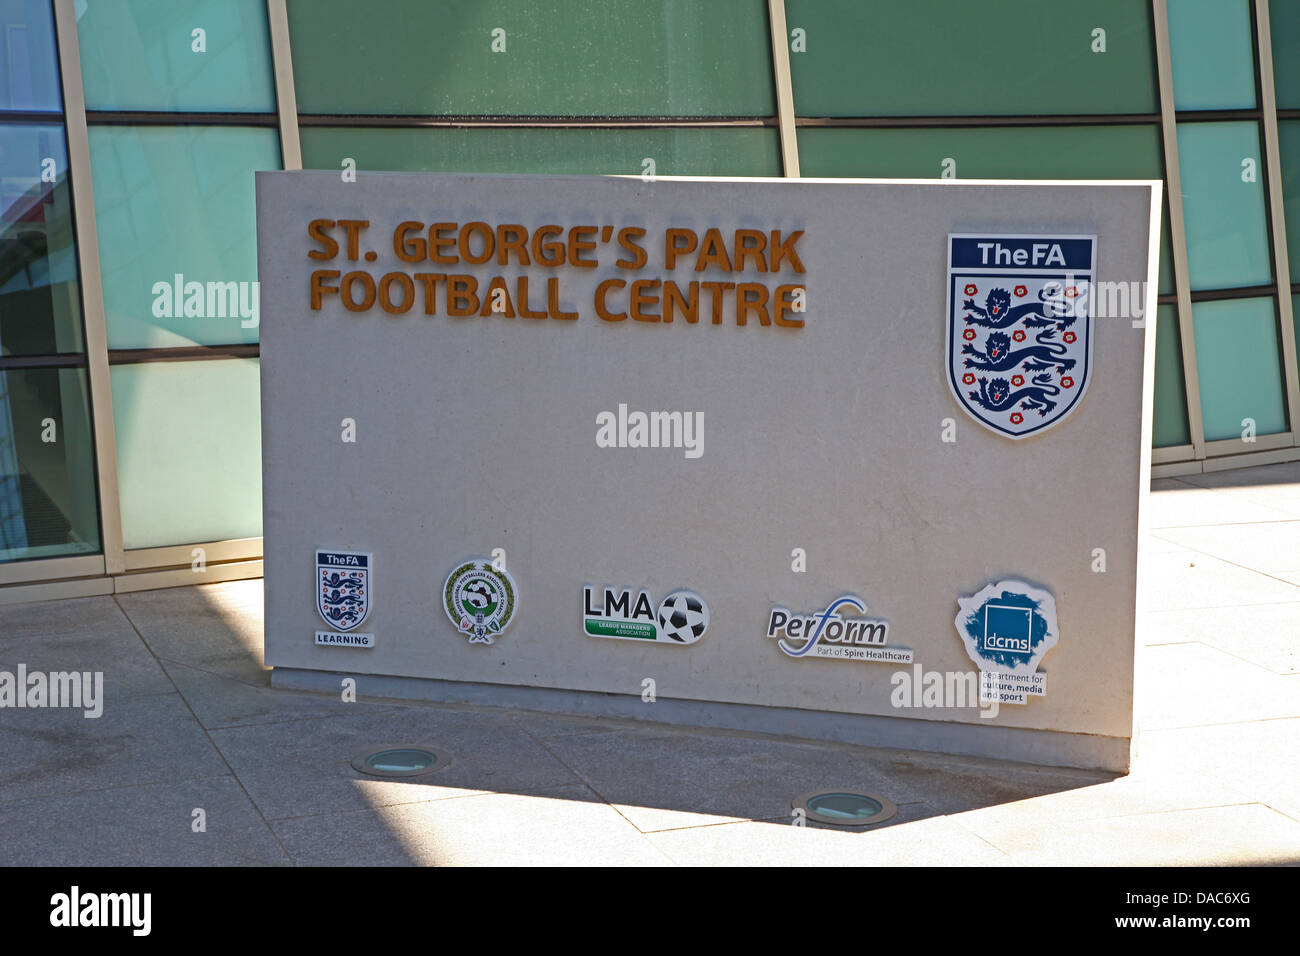 St George's Park, le centre national de football de l'équipe anglaise de football à Burton Upon Trent, Staffordshire, Staffs, Angleterre Banque D'Images